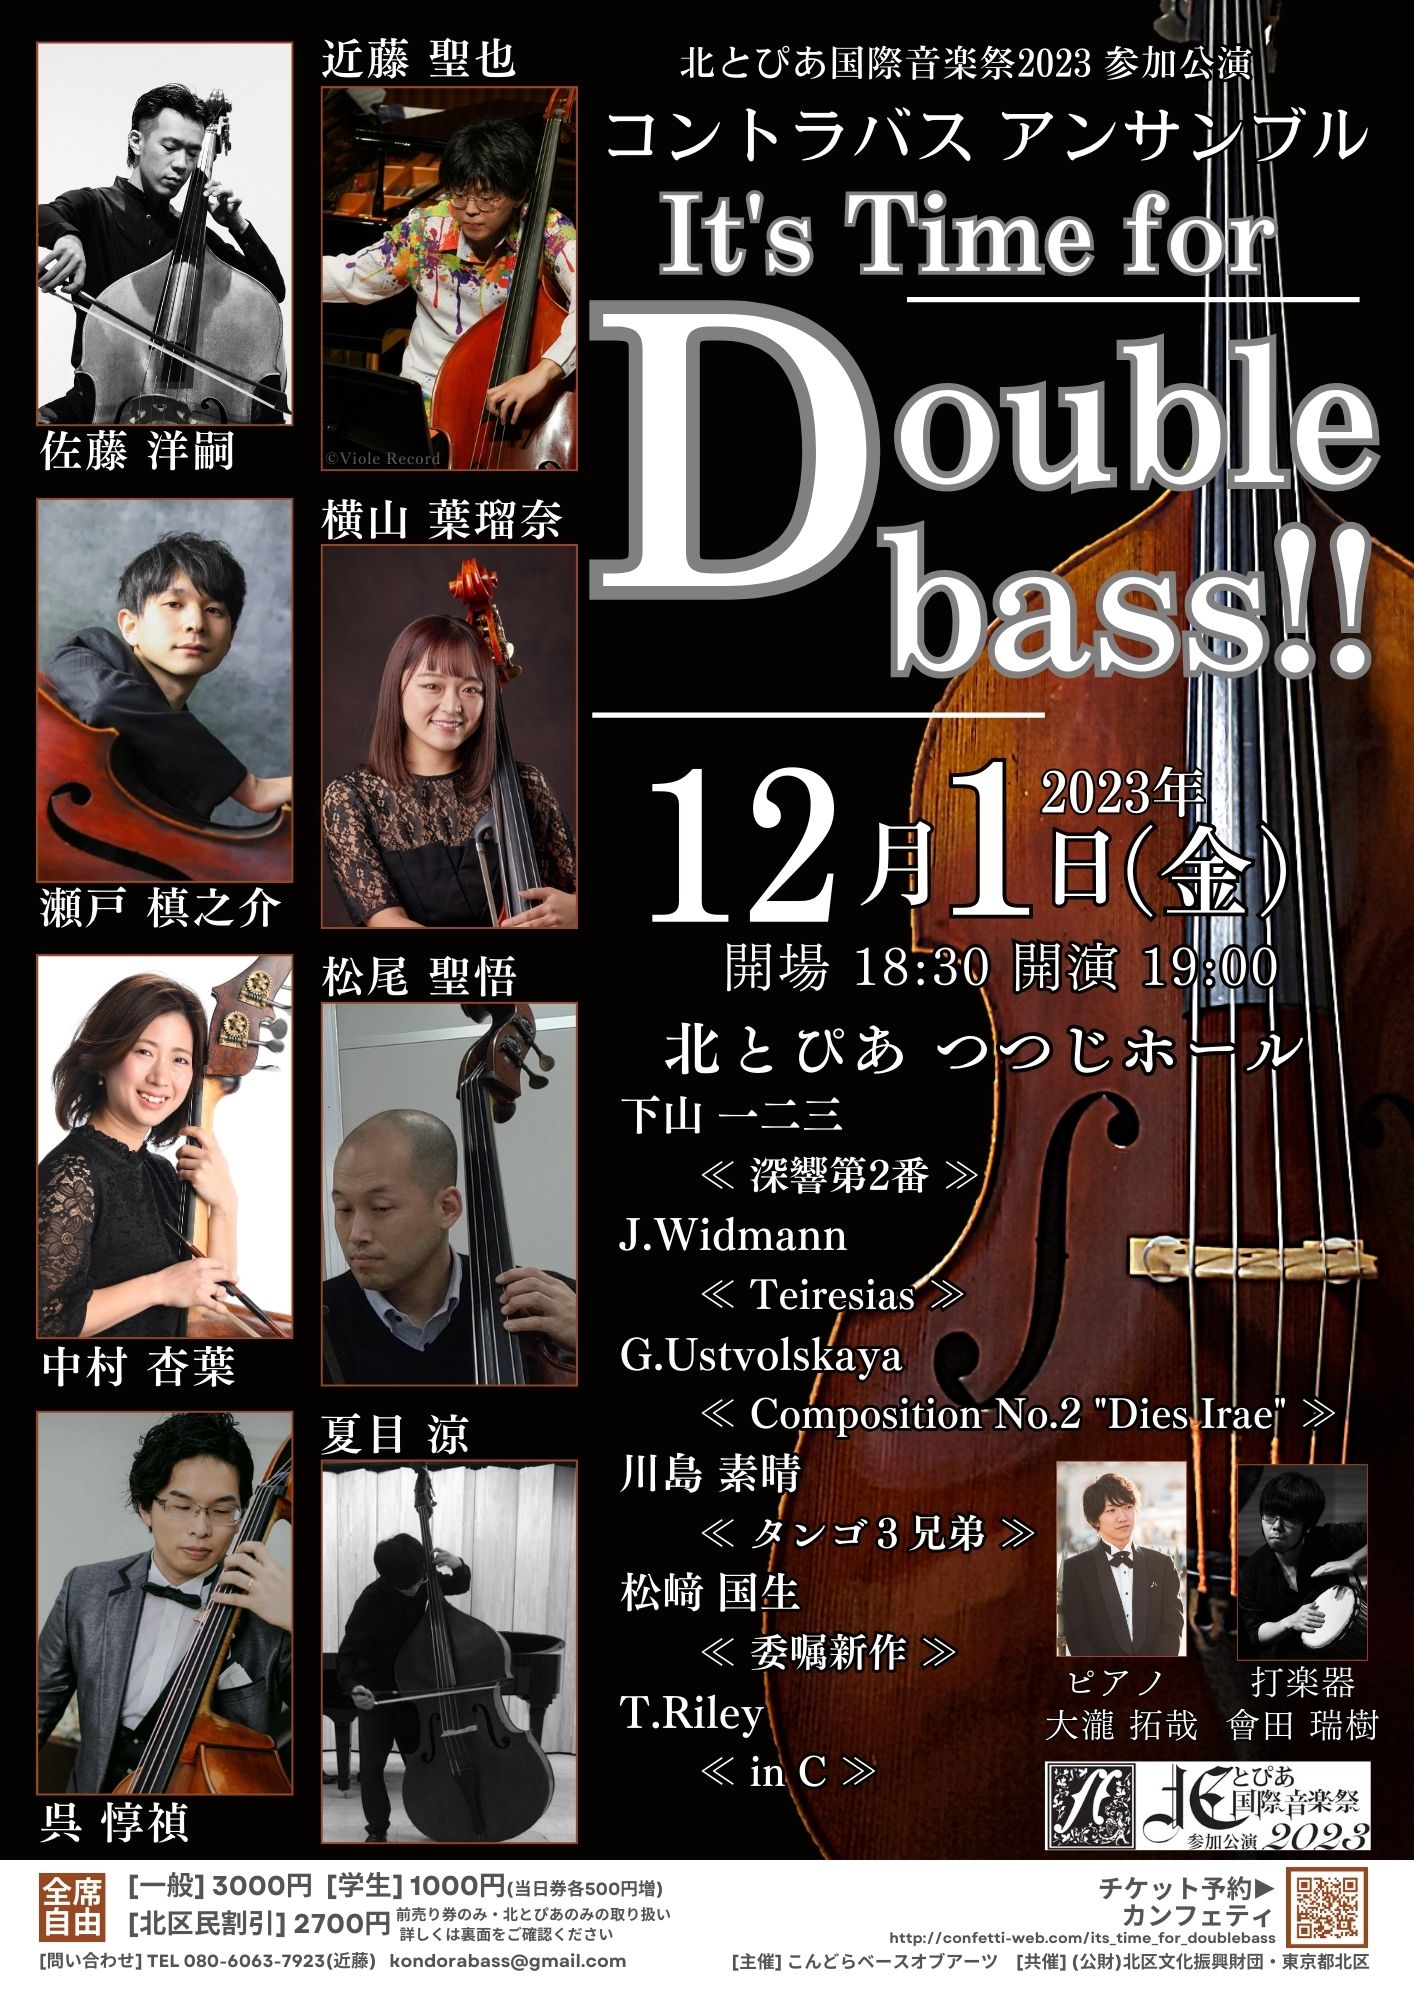 コントラバスアンサンブルIt's Time for Double bass!!